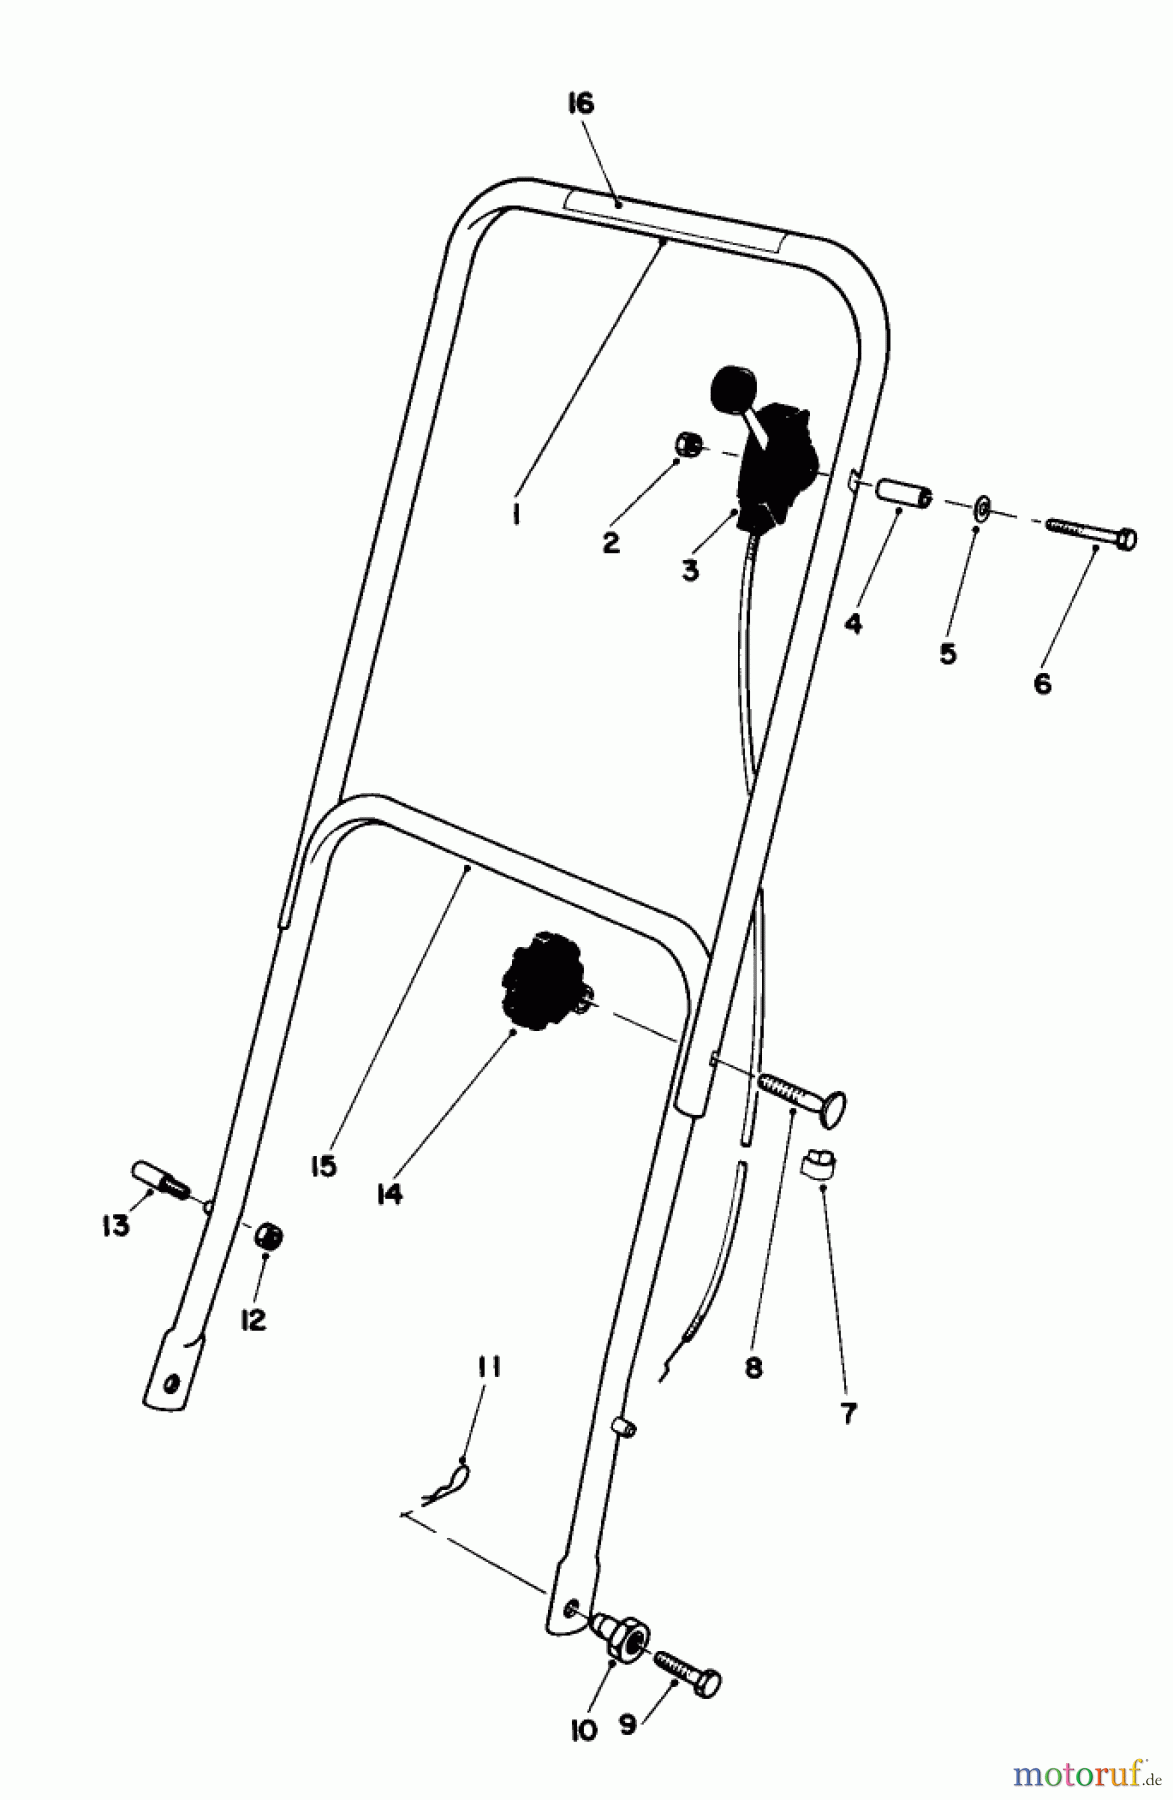  Toro Neu Mowers, Walk-Behind Seite 1 16340C - Toro Lawnmower, 1987 (7000001-7999999) HANDLE ASSEMBLY